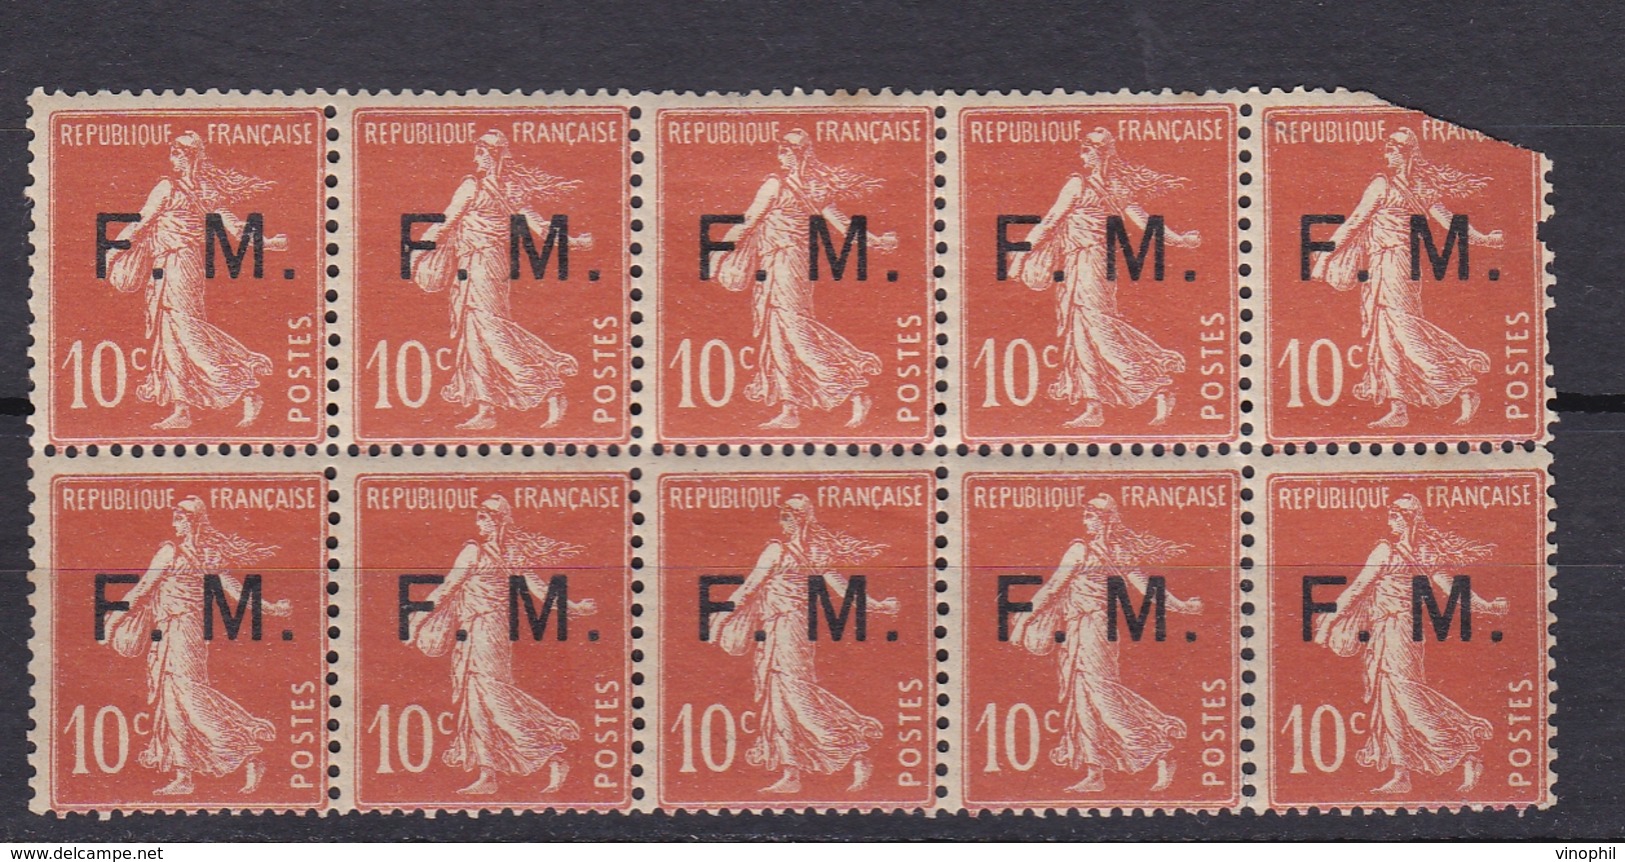 FRANCE TIMBRES DE GUERRE N° 5 SEMEUSE CAMEE 10C ROUGE BLOC DE 10 - Guerre (timbres De)